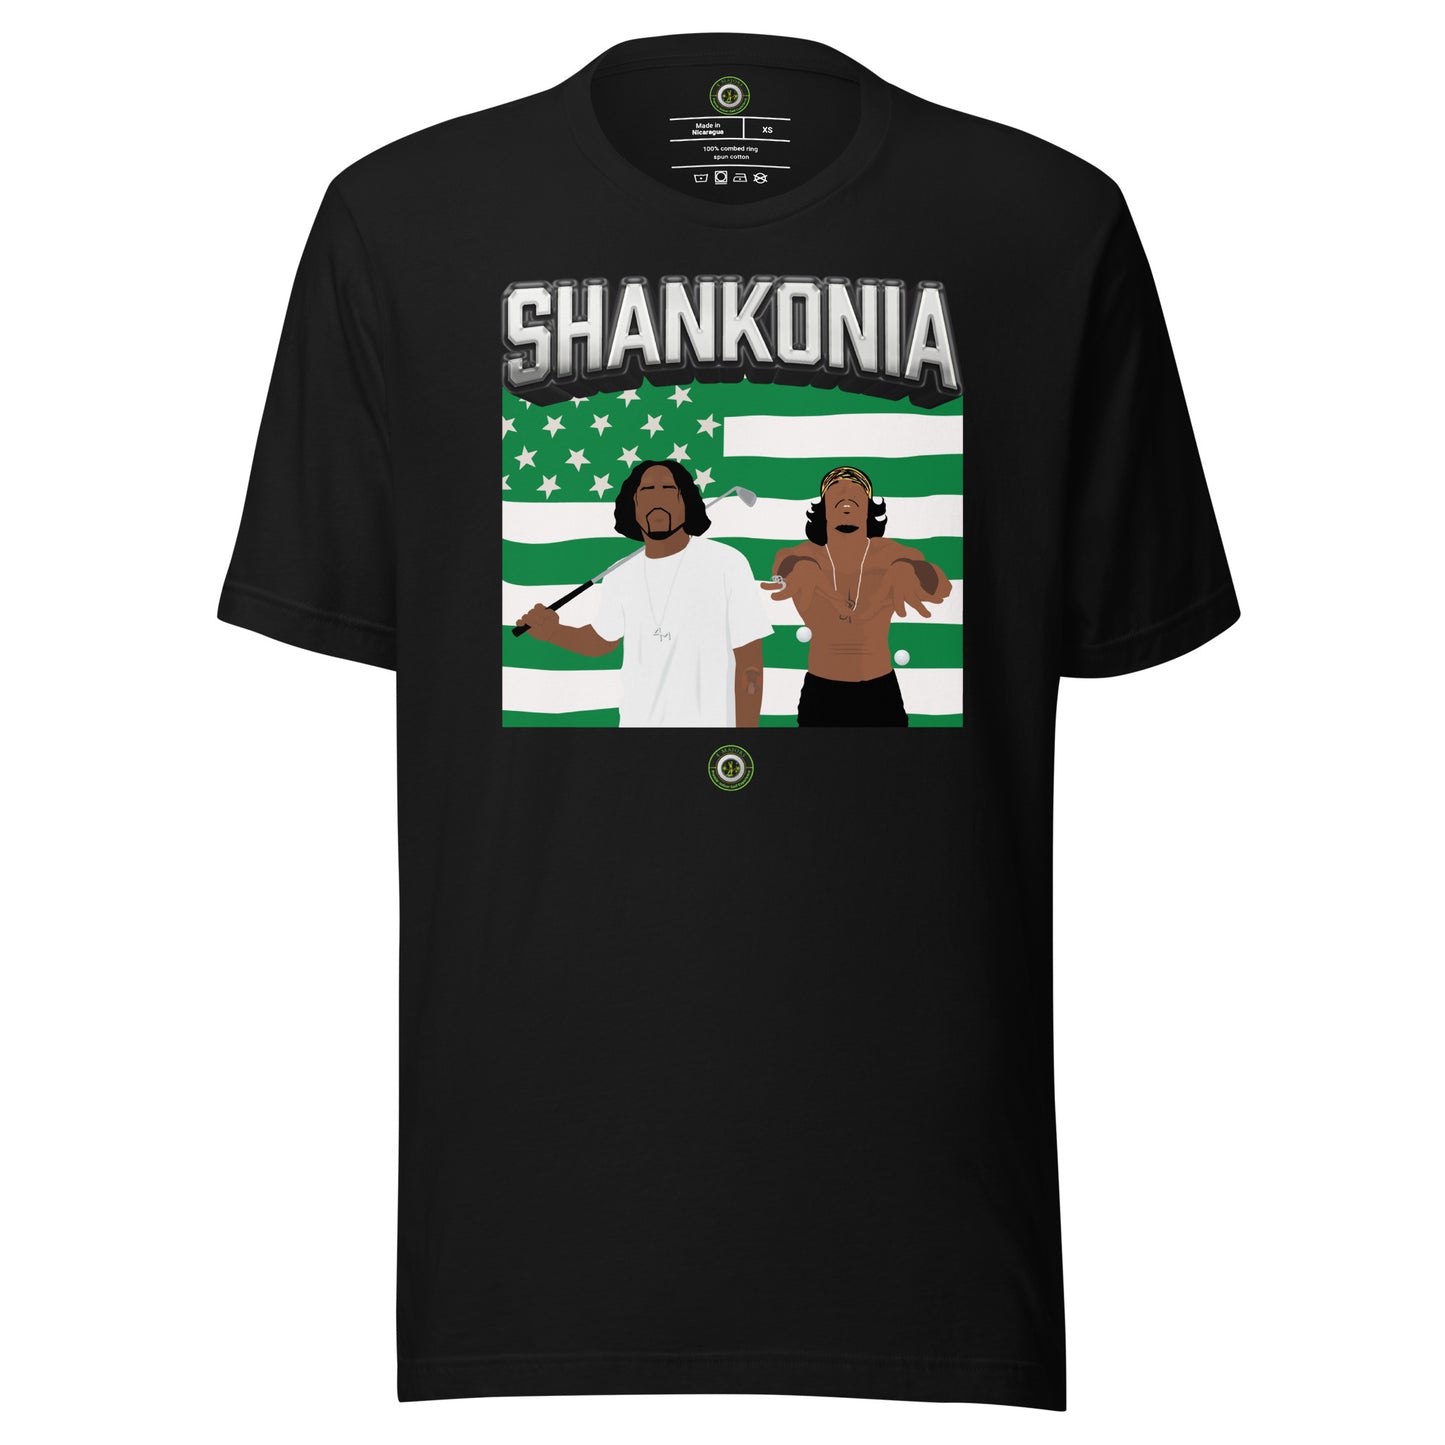 Shankonia Shirt